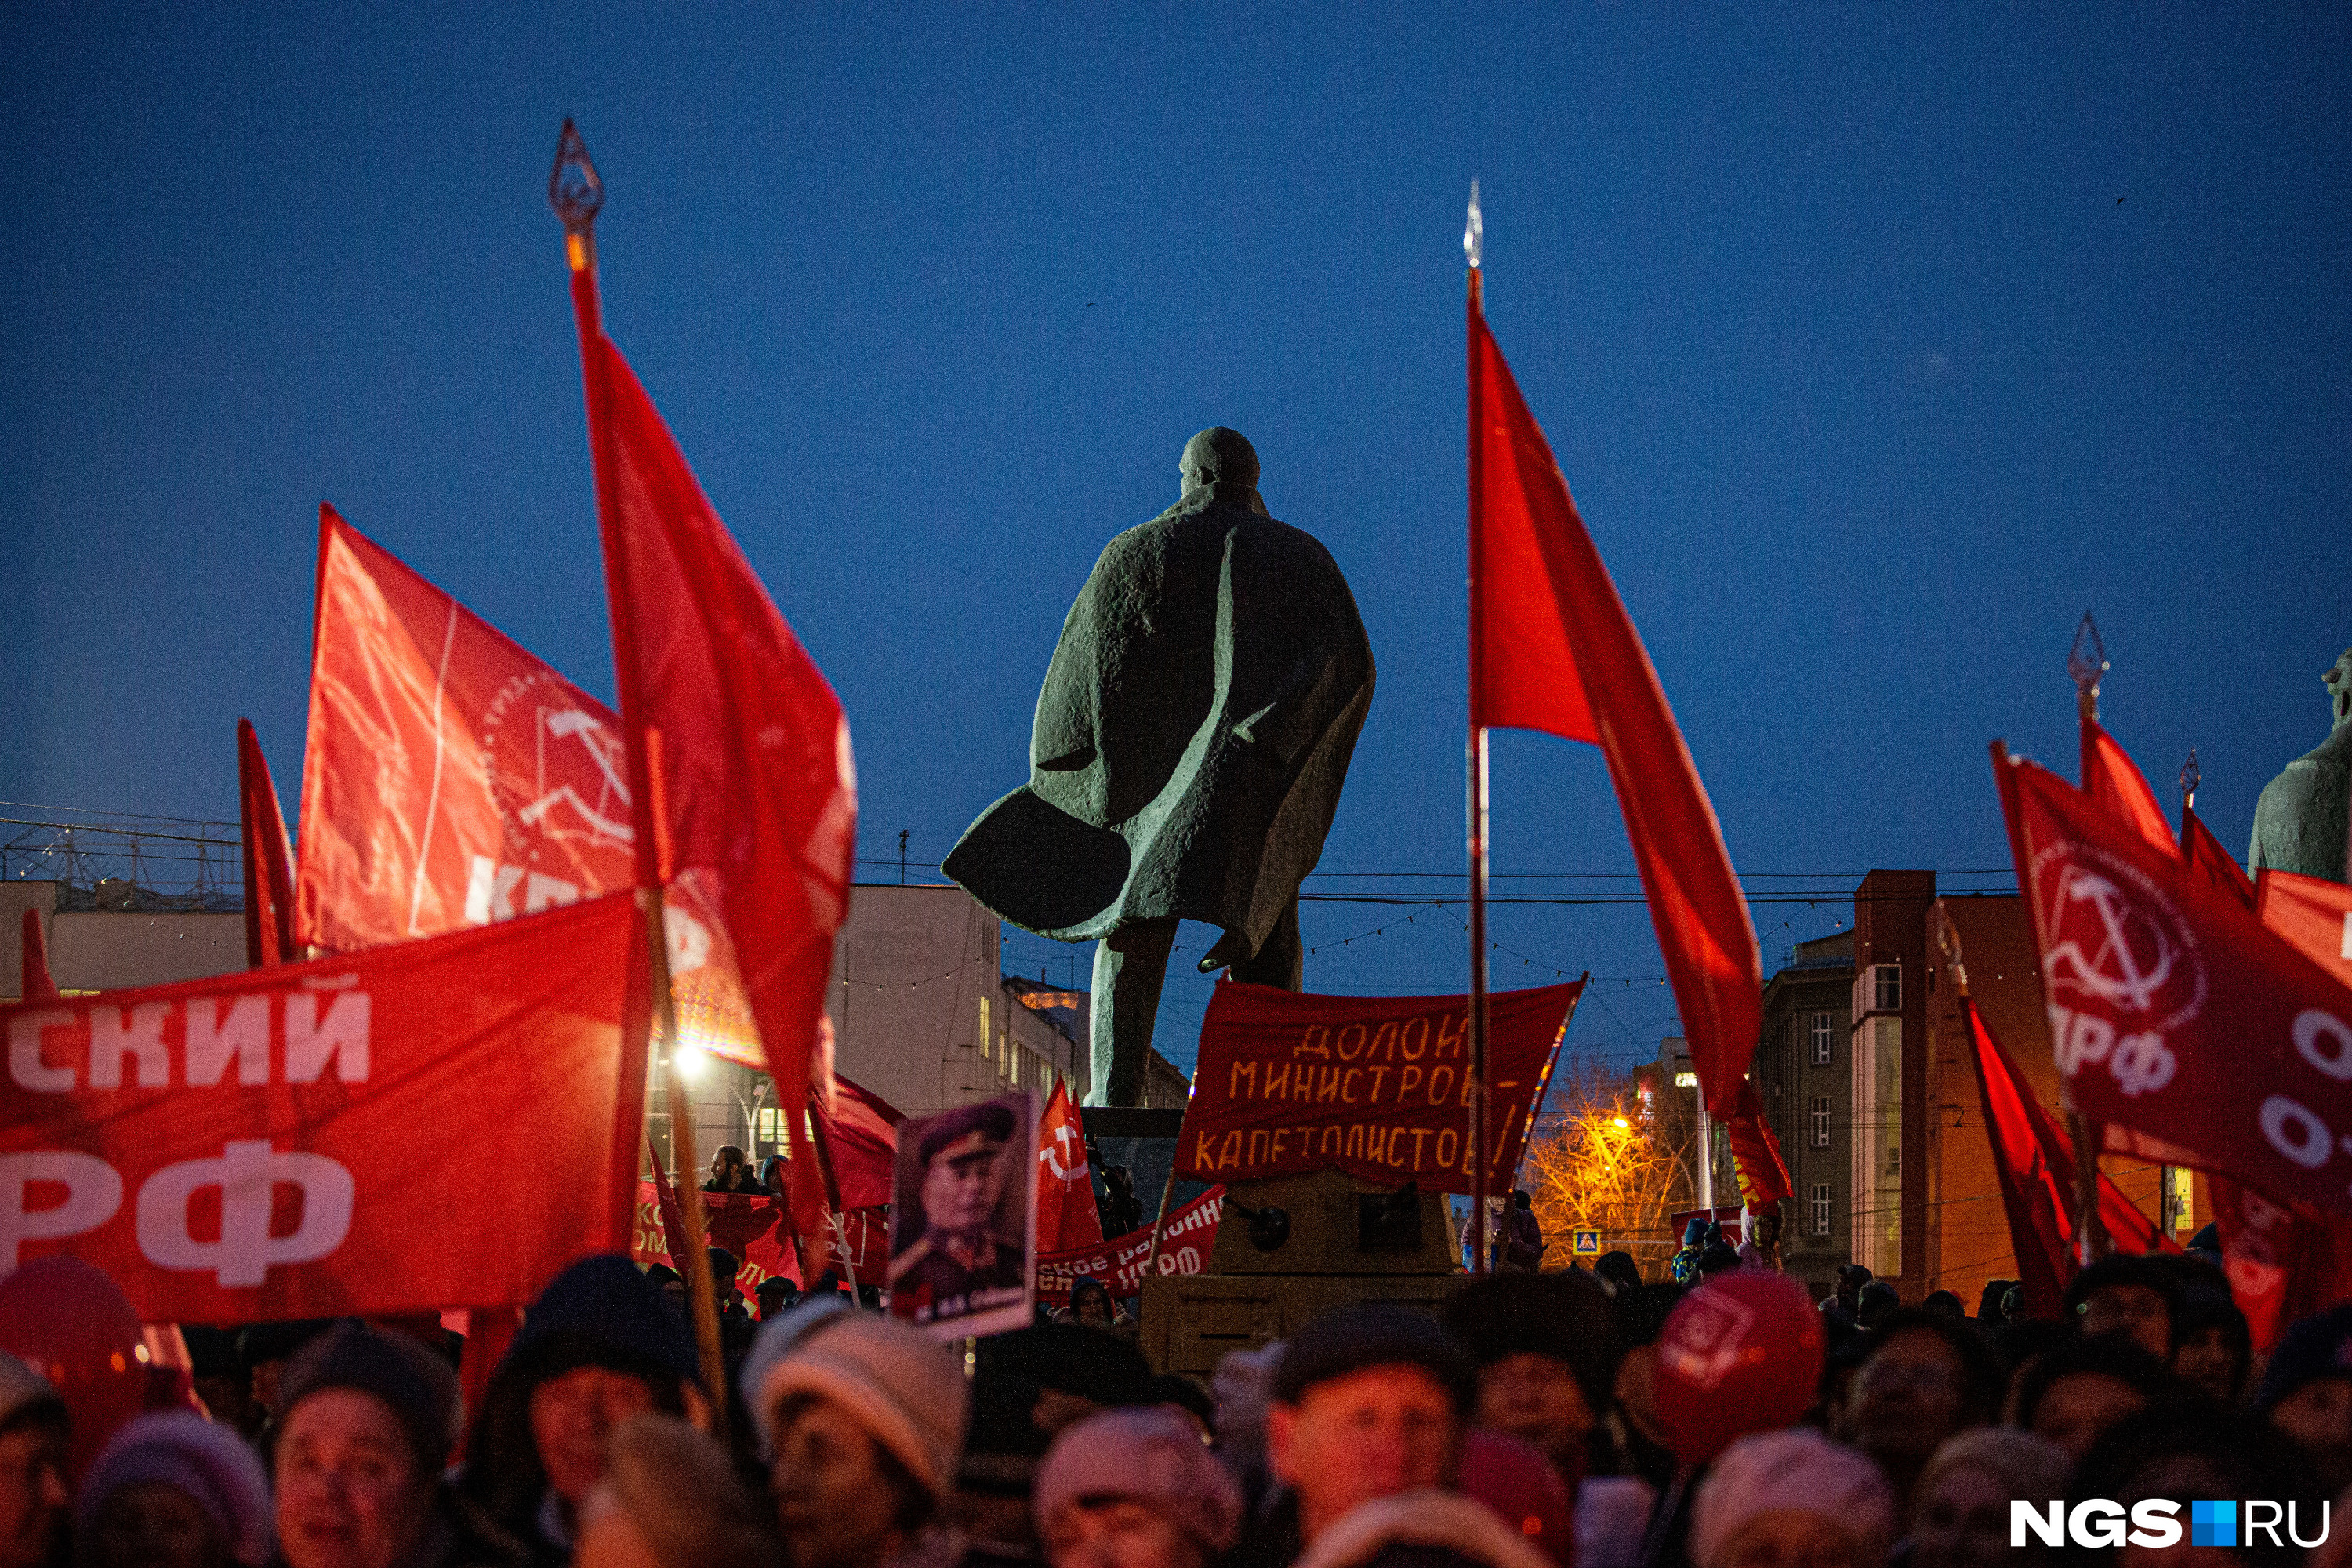 Шествие закончилось митингом на площади Ленина. Собравшиеся требовали роста зарплат и пенсий 